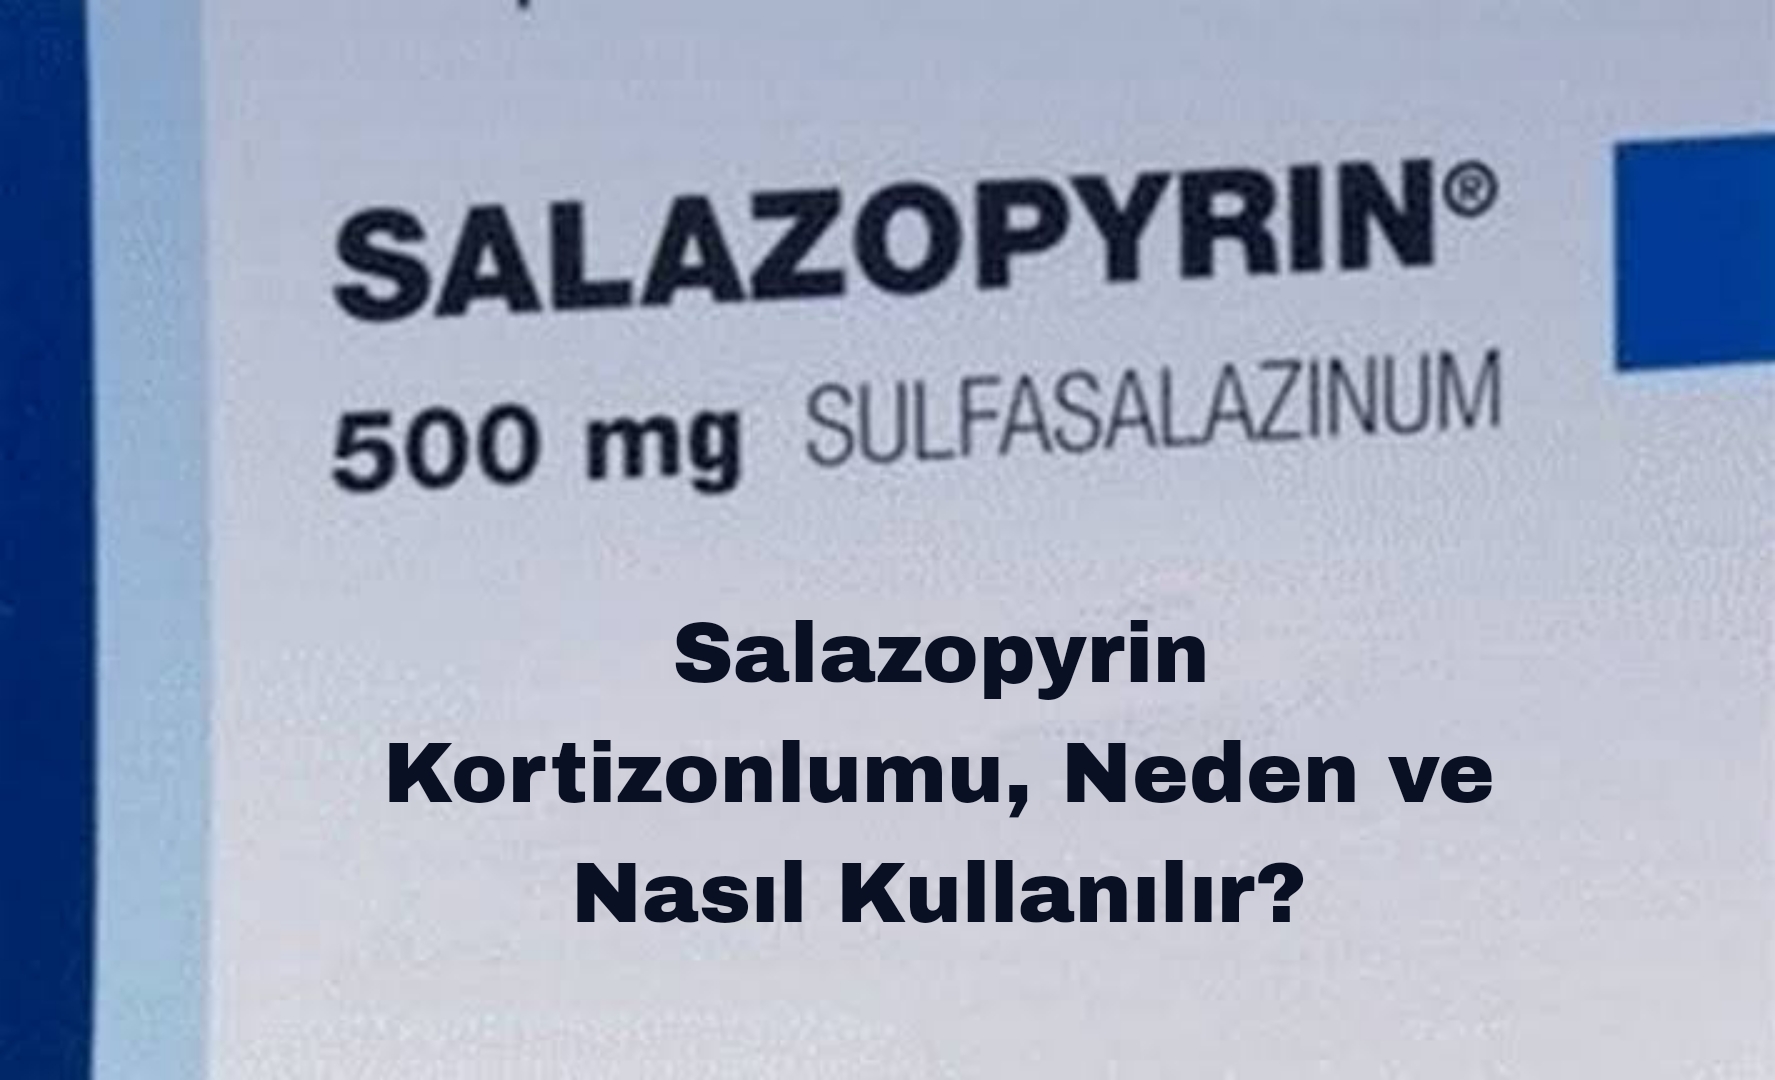 Salazopyrin Kortizonlumu, Neden ve Nasıl Kullanılır?